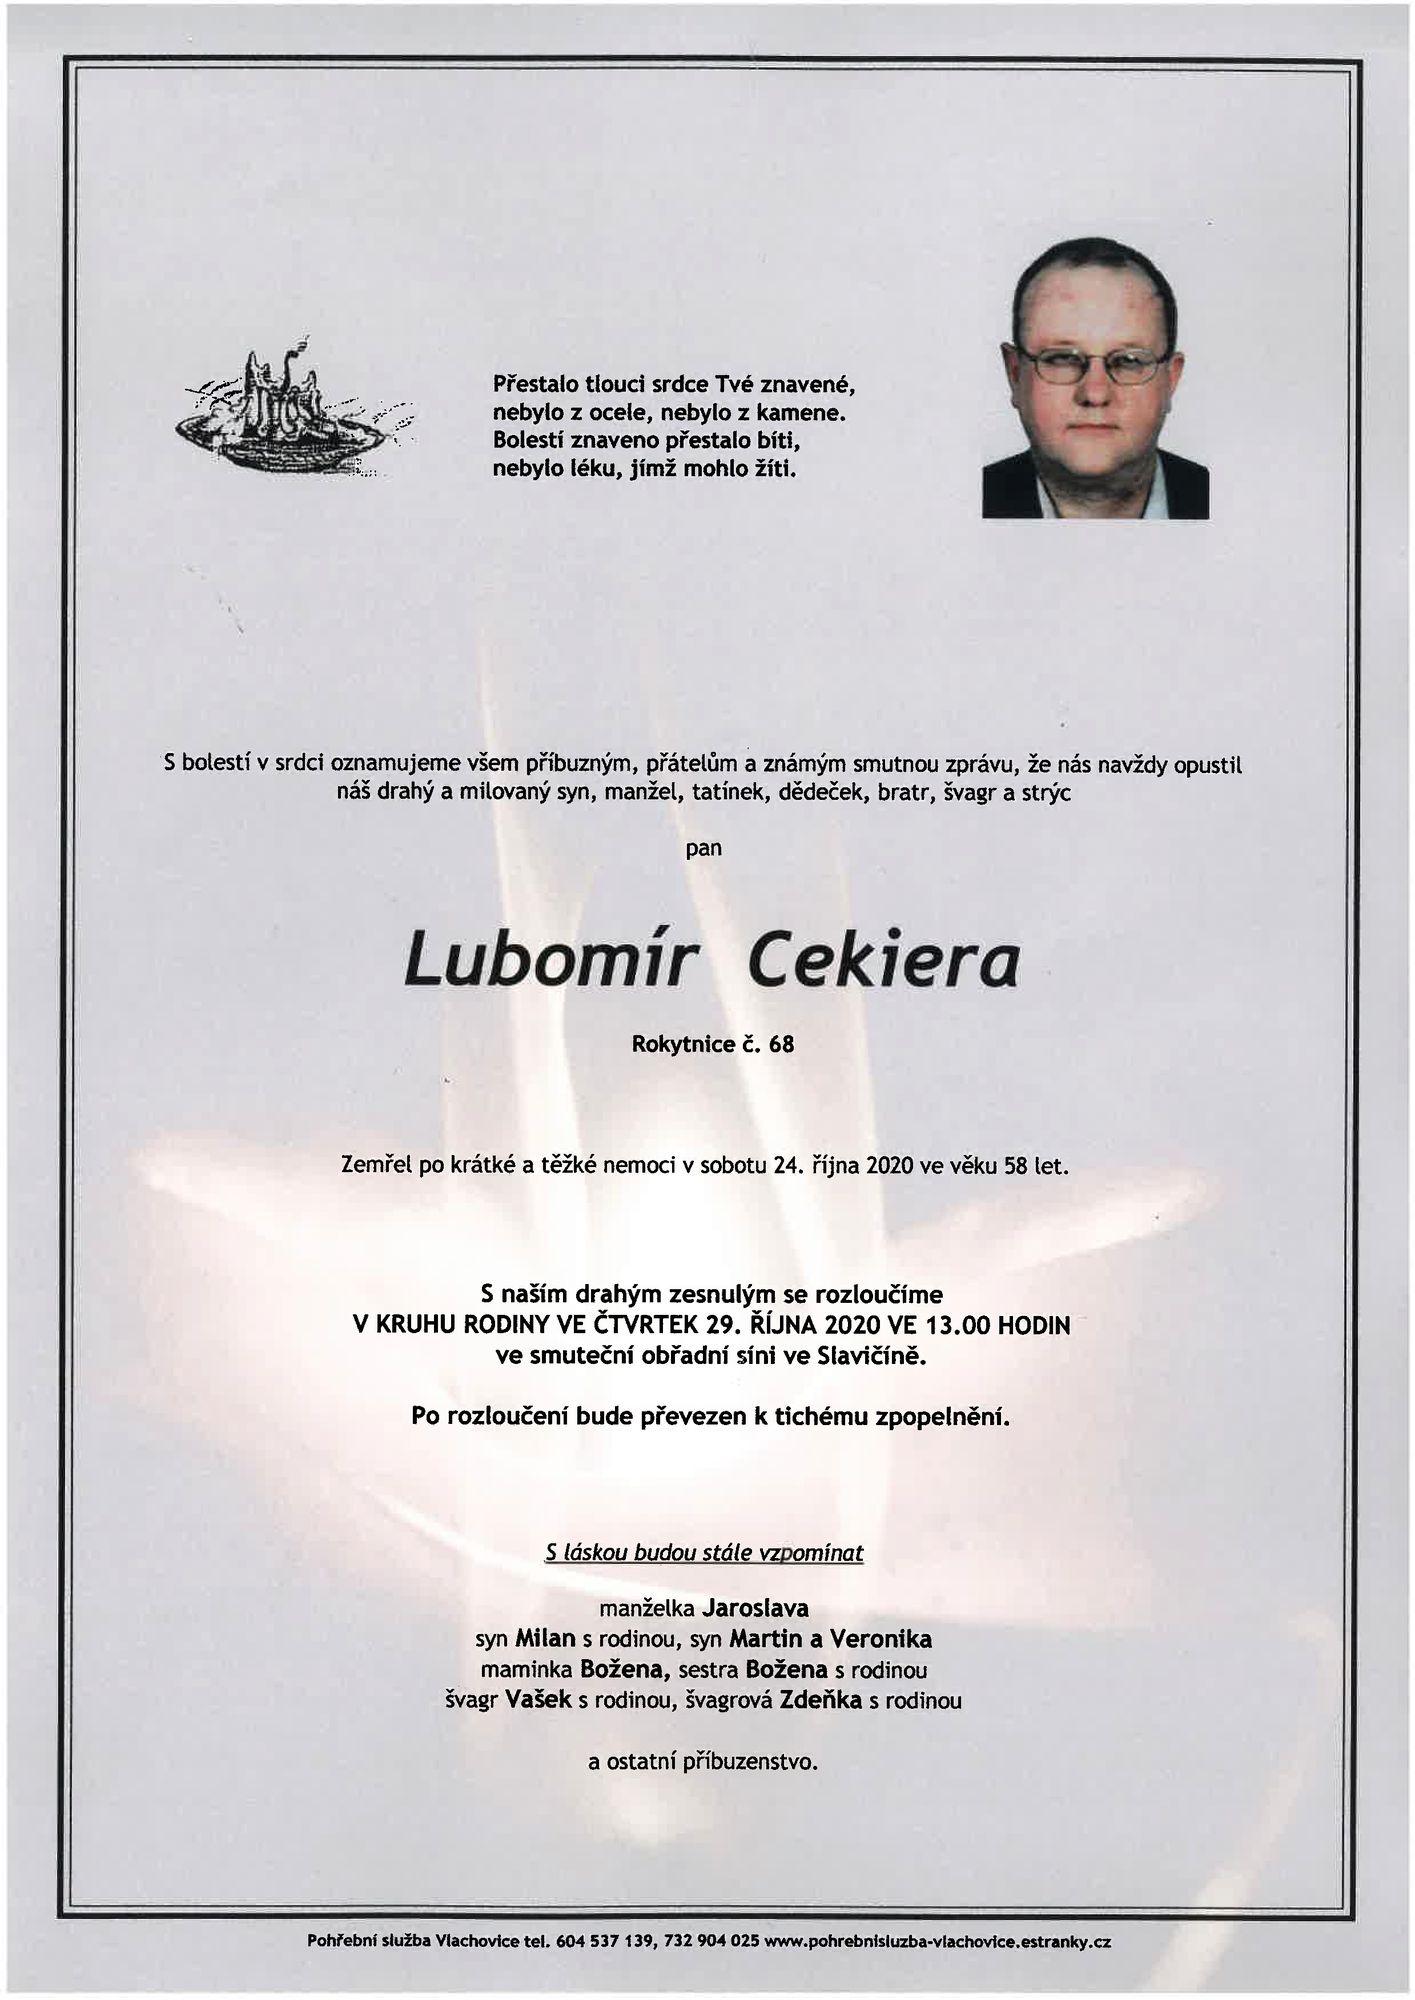 Lubomír Cekiera